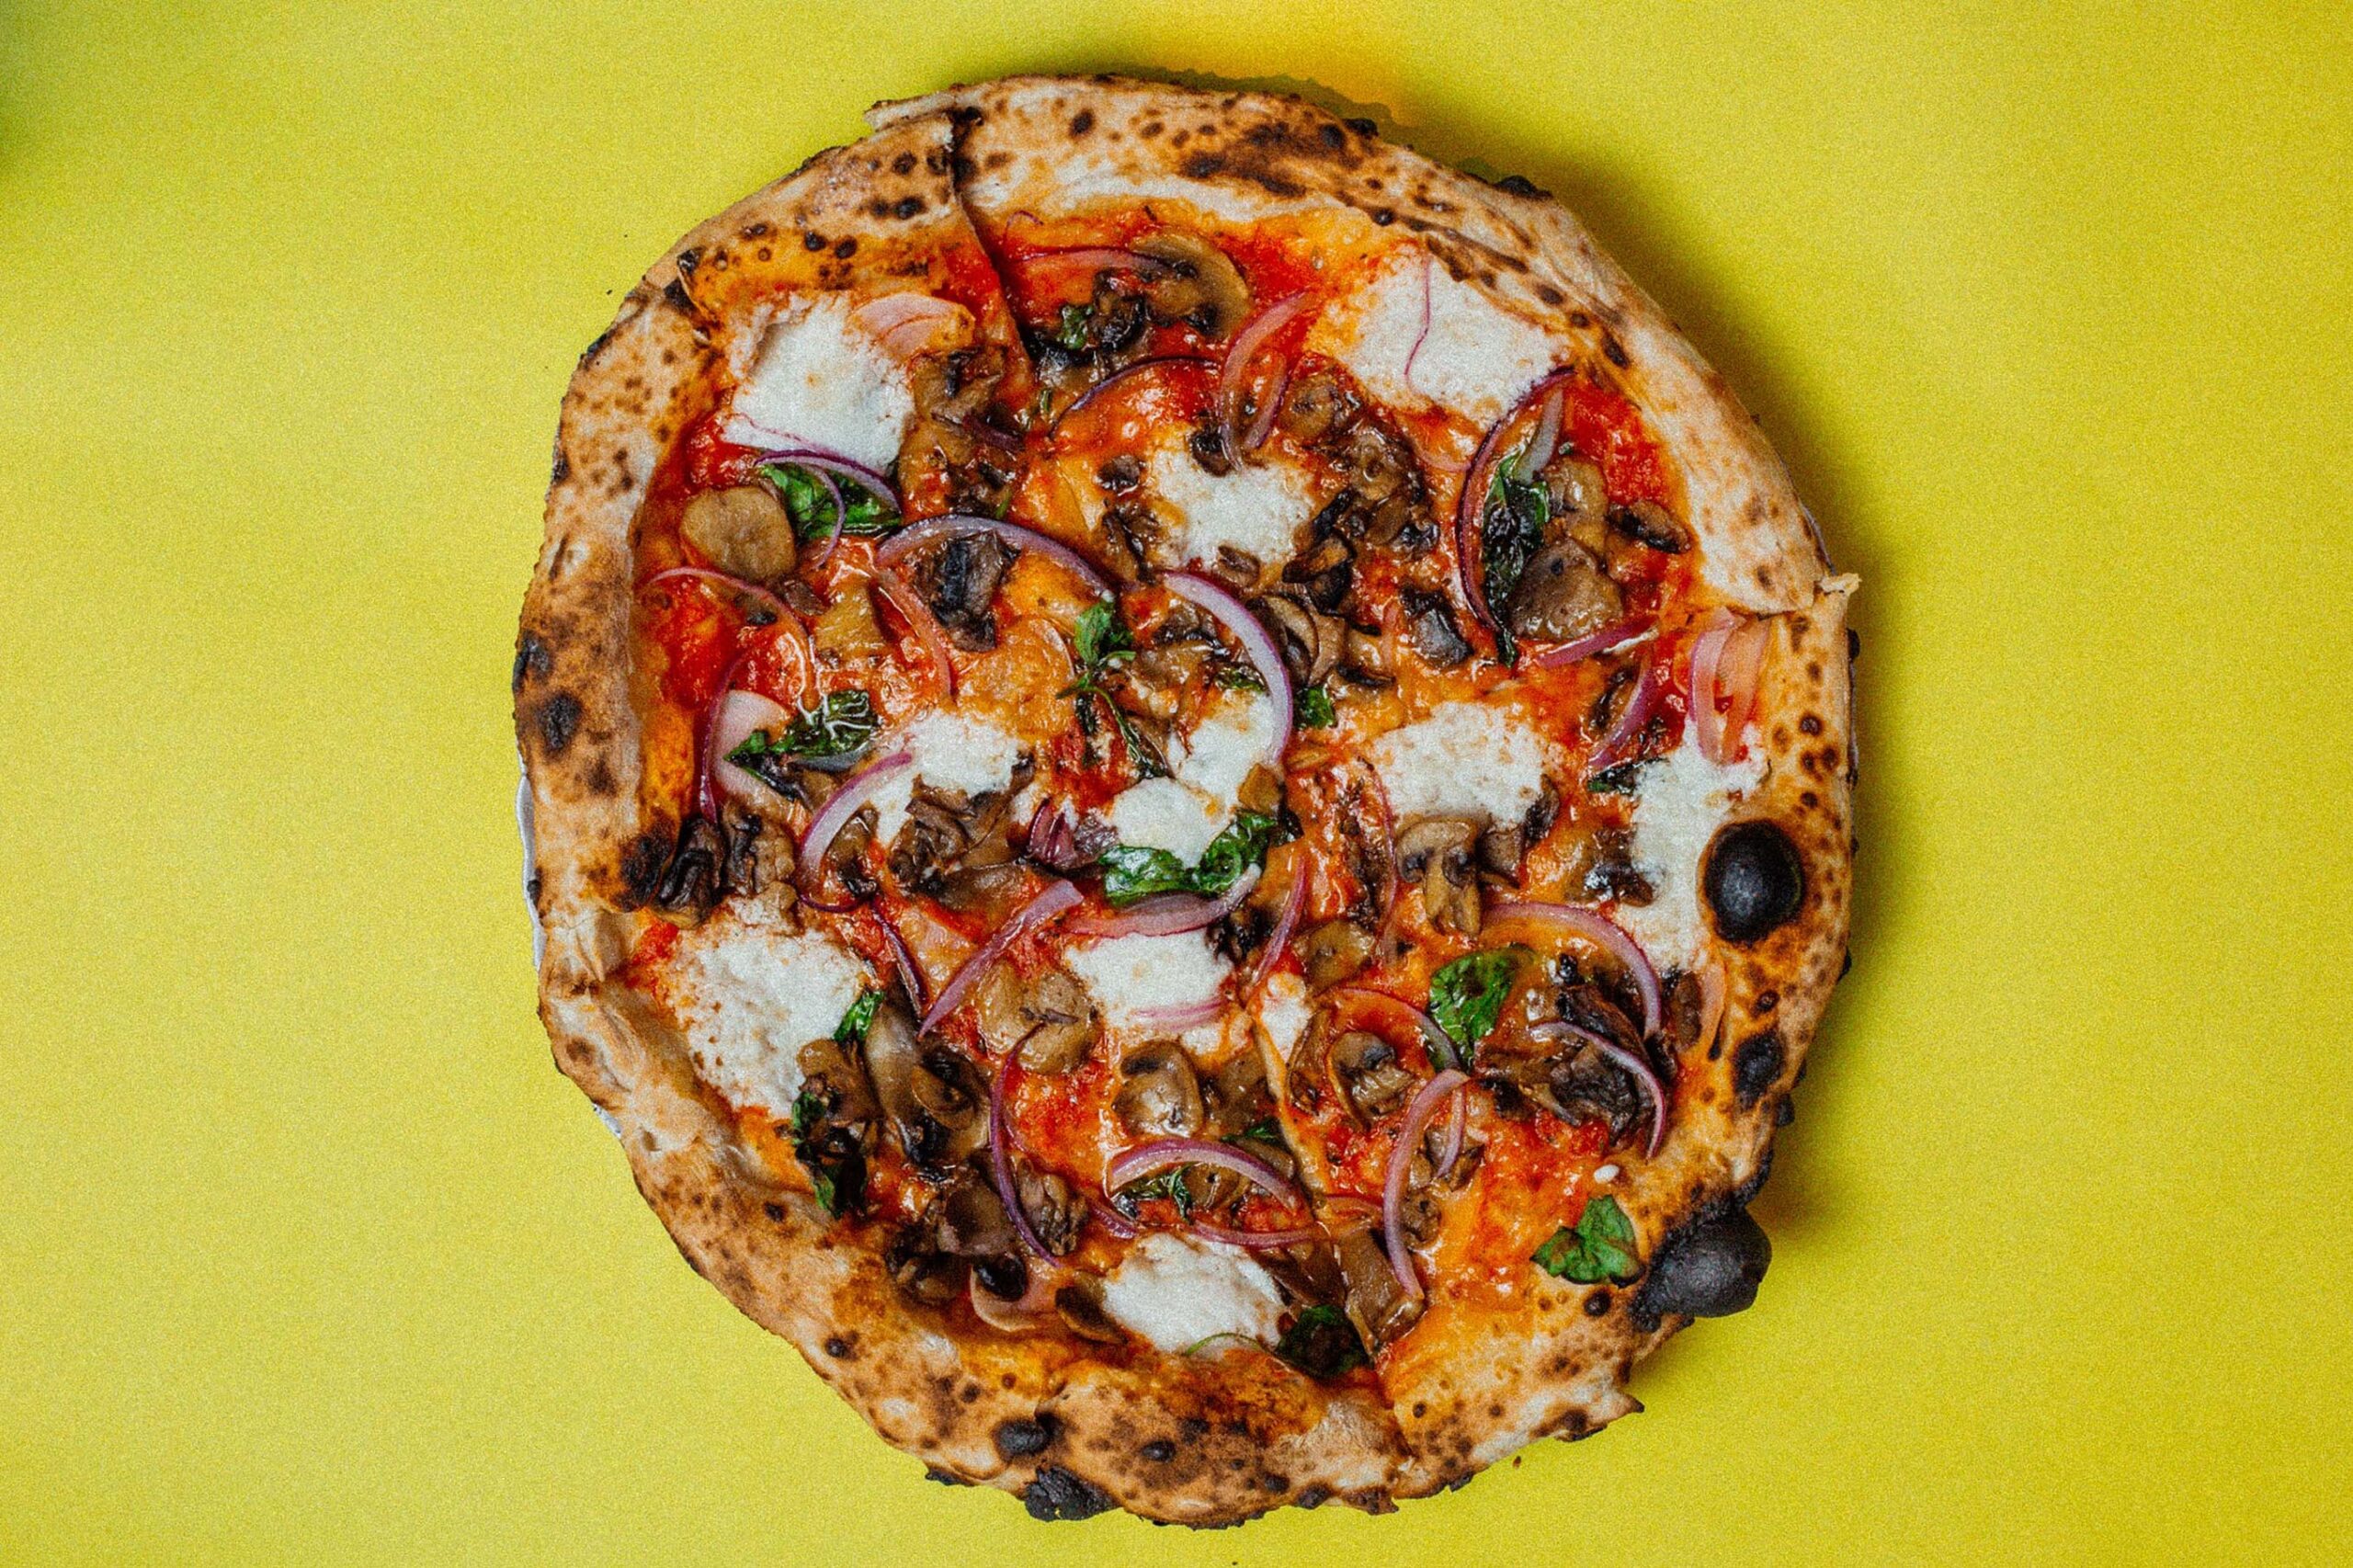 Criada por Anthony Falco, pizza guru nova-iorquino que assina todos os sabores fixos da Bráz Elettrica, a Cajupiry (R$ 43) leva molho de tomate, orégano, alho, manjericão, cogumelo, cebola roxa, parmesão vegano e cajupiry